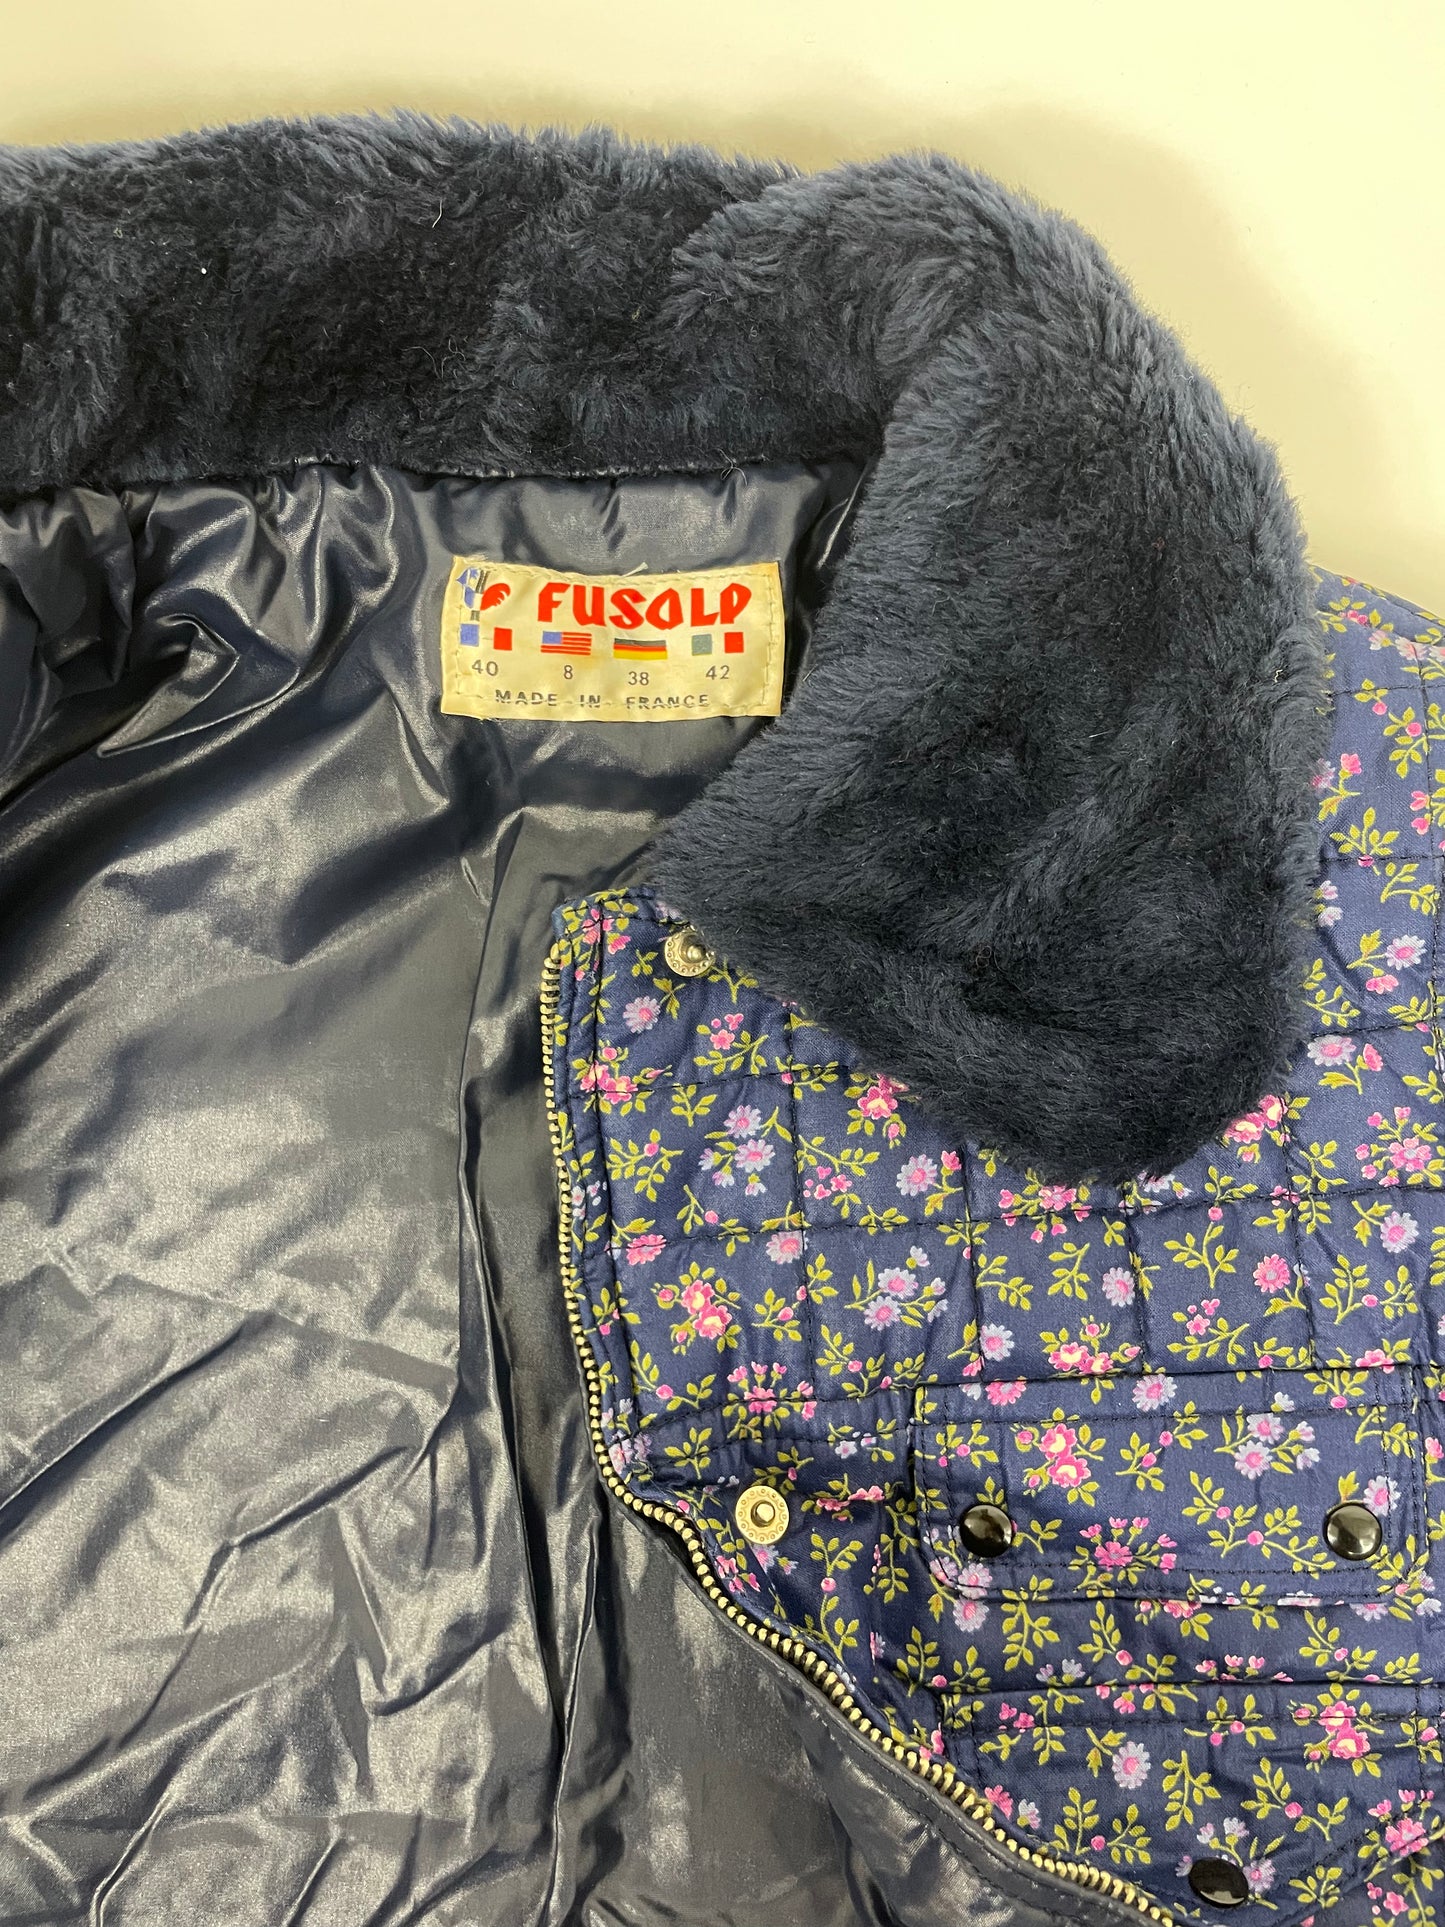 Fusalp-Jacke aus den 1980er Jahren